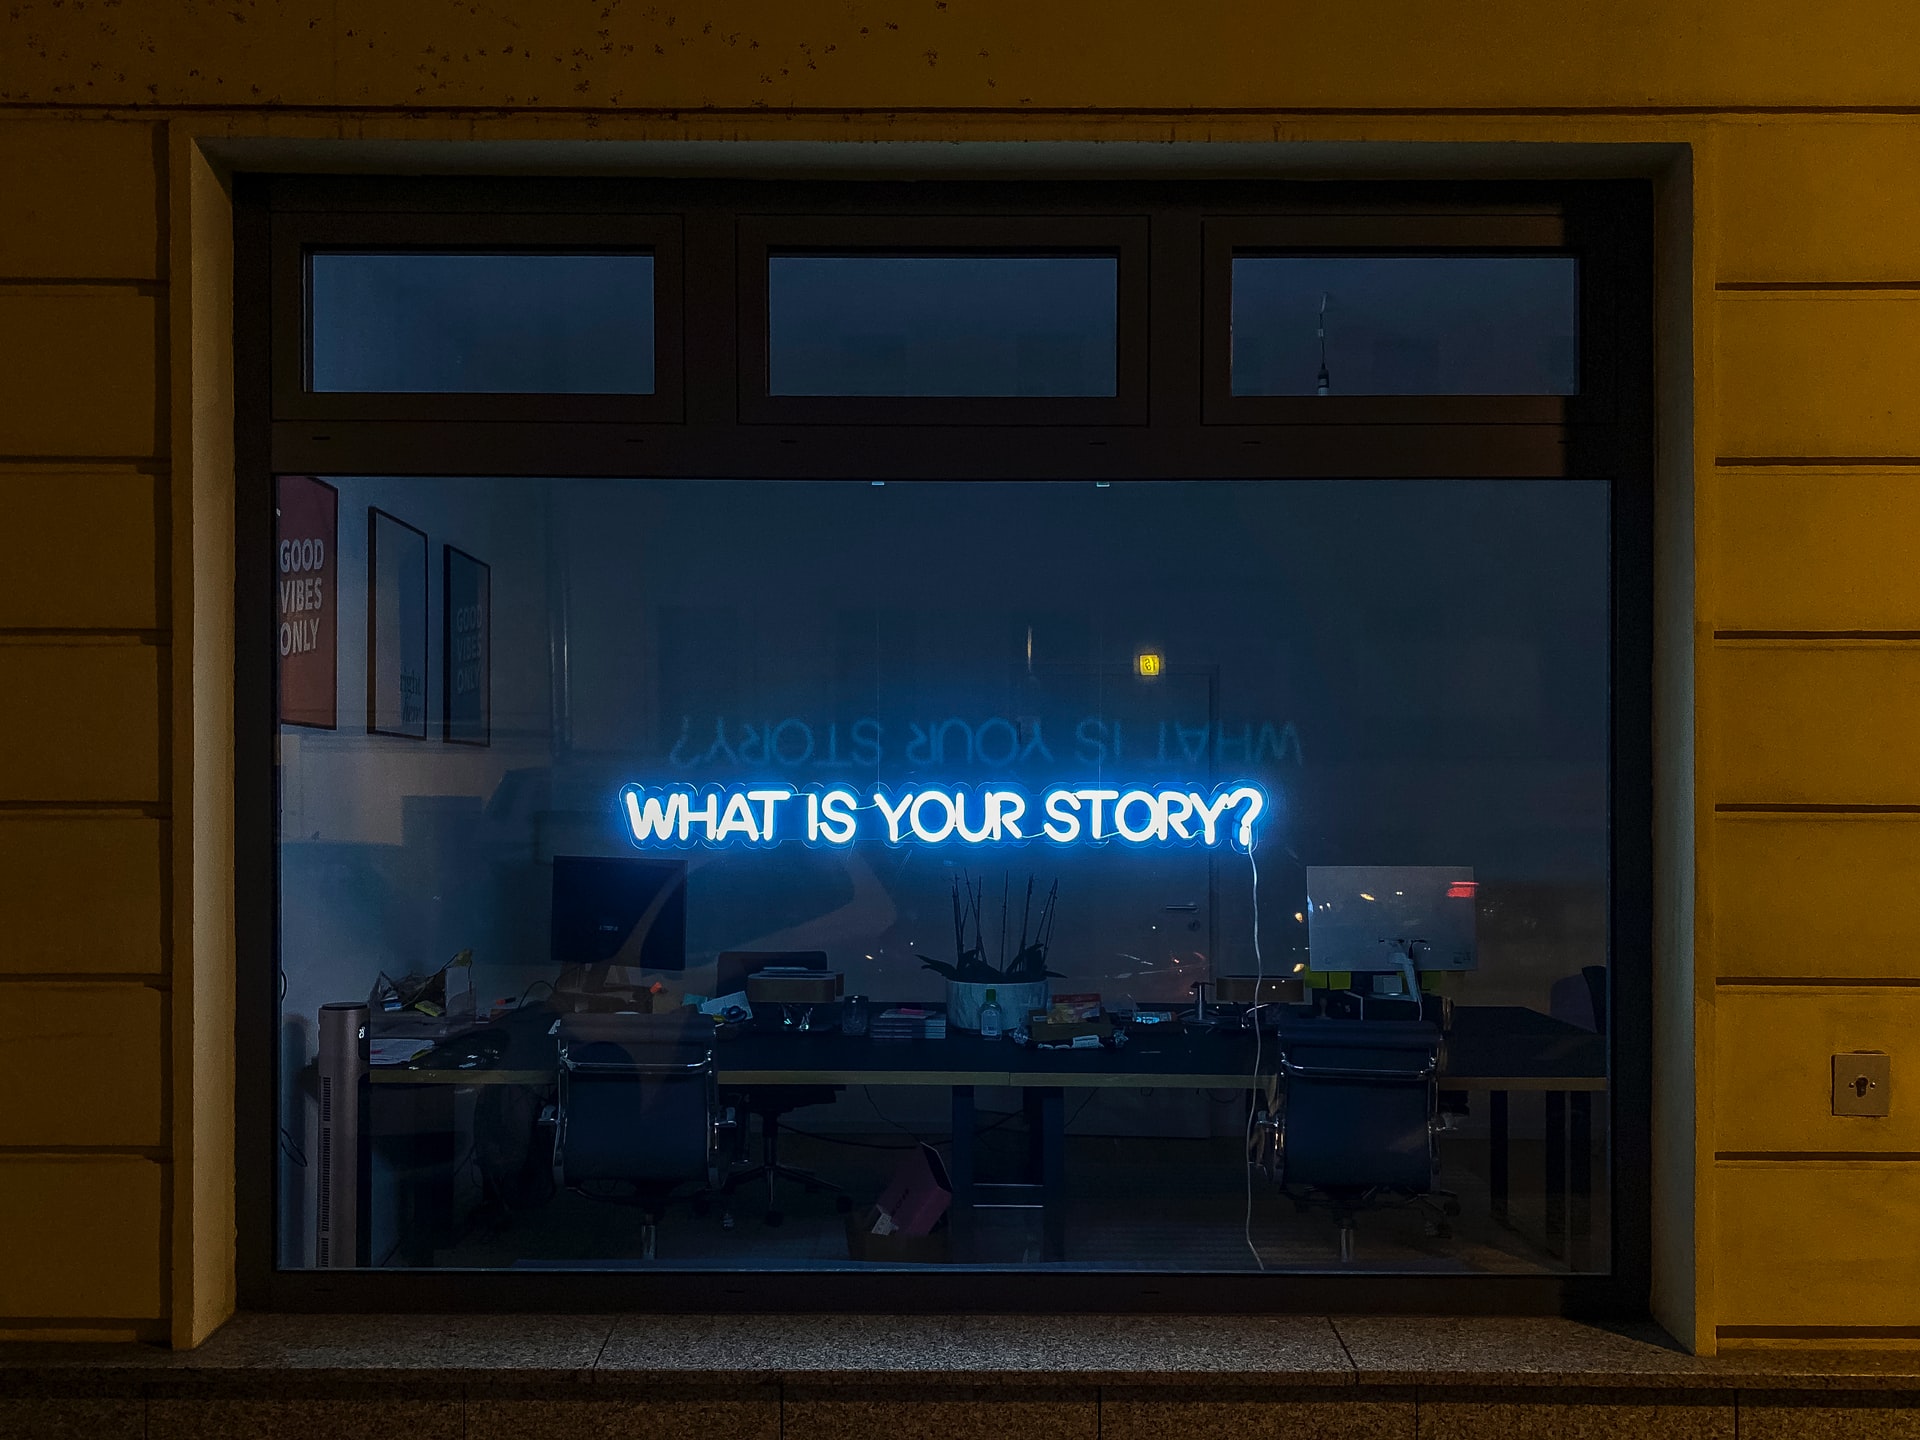 El storytelling te permite conectar con tu audiencia